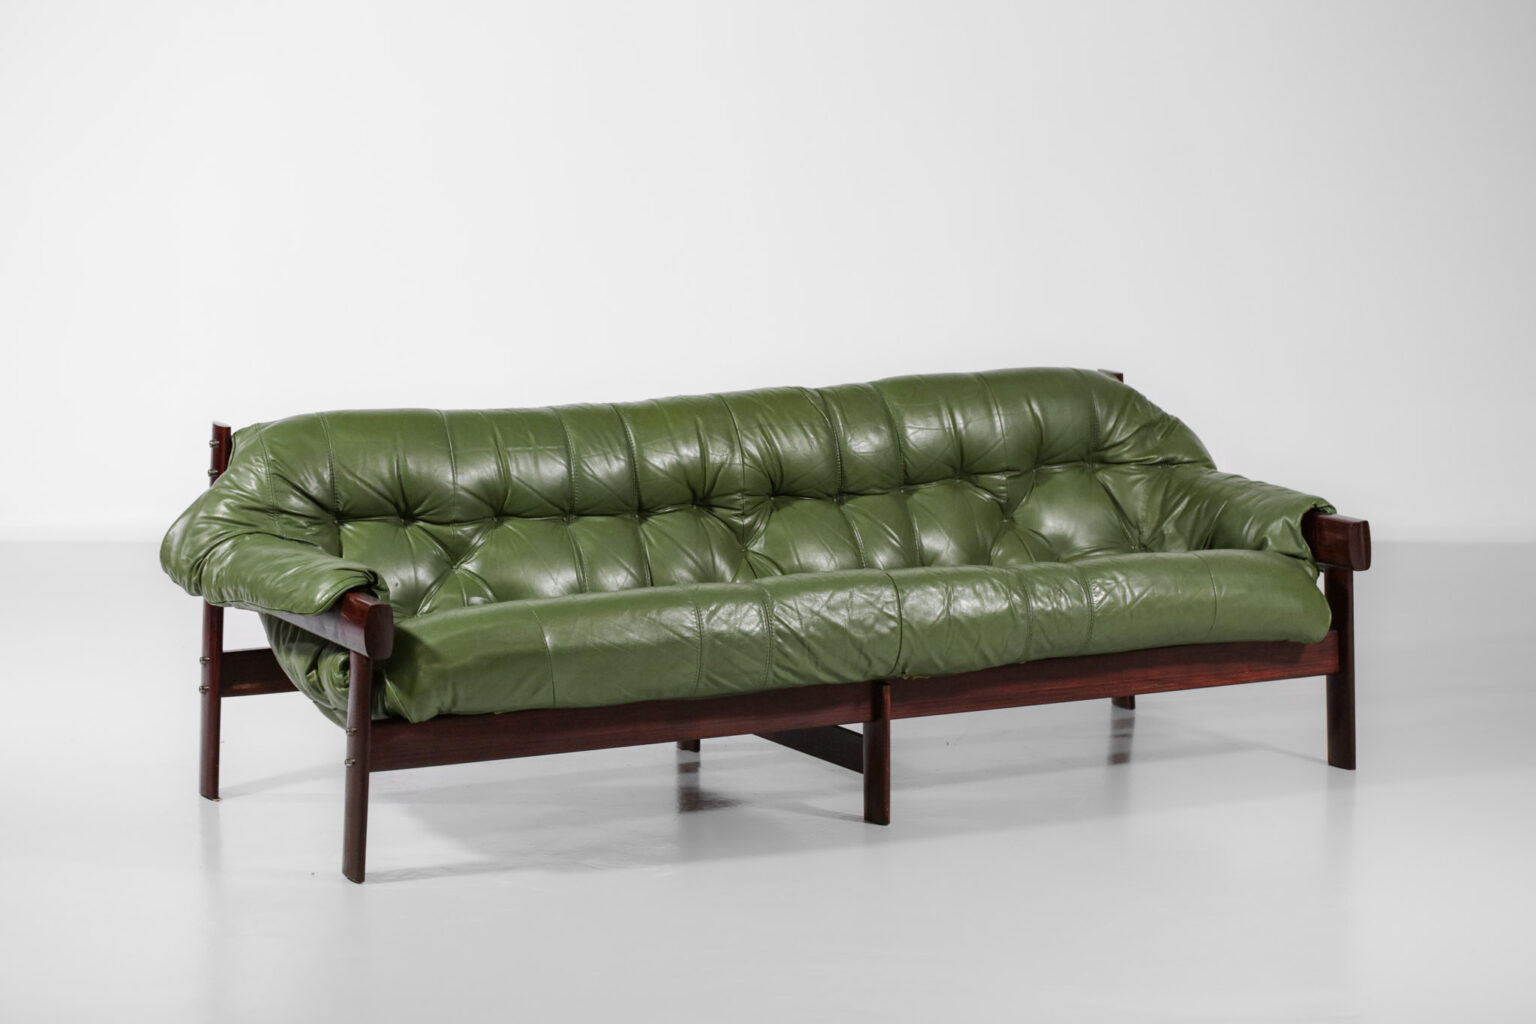 percival lafer brazilian leather sofa